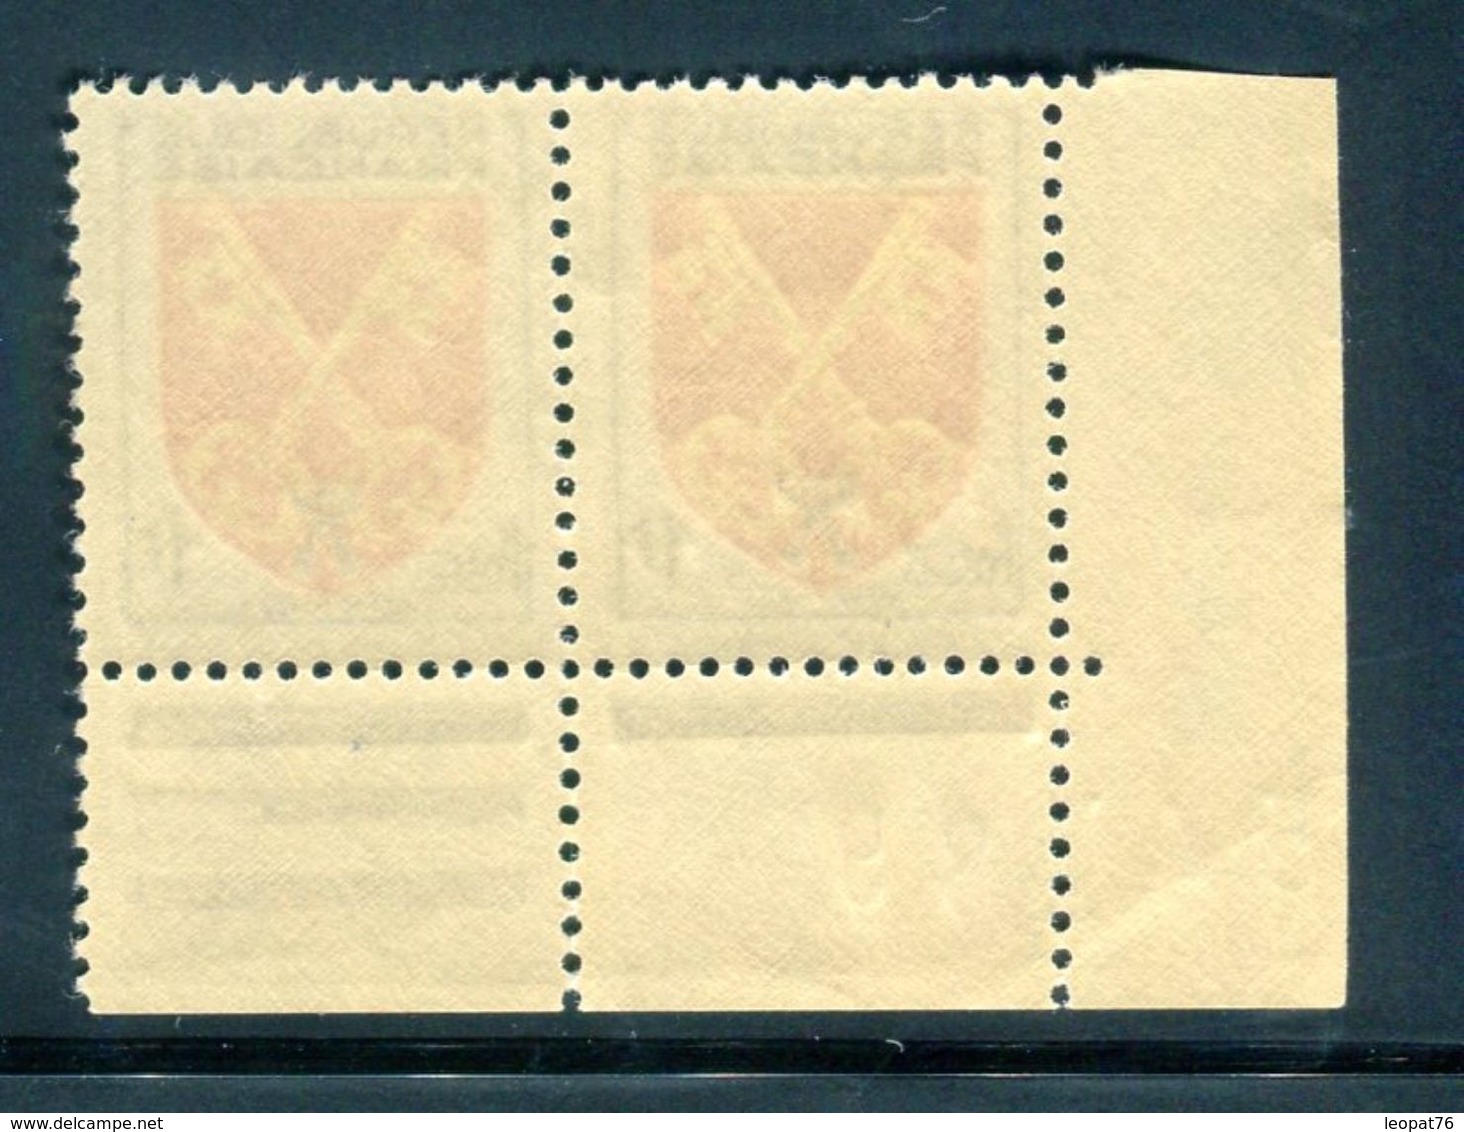 France - N° 1047 ,1 Exemplaire Lettre A Tronquée Tenant à 1 Normal , Neufs Luxes - Ref V493 - Neufs